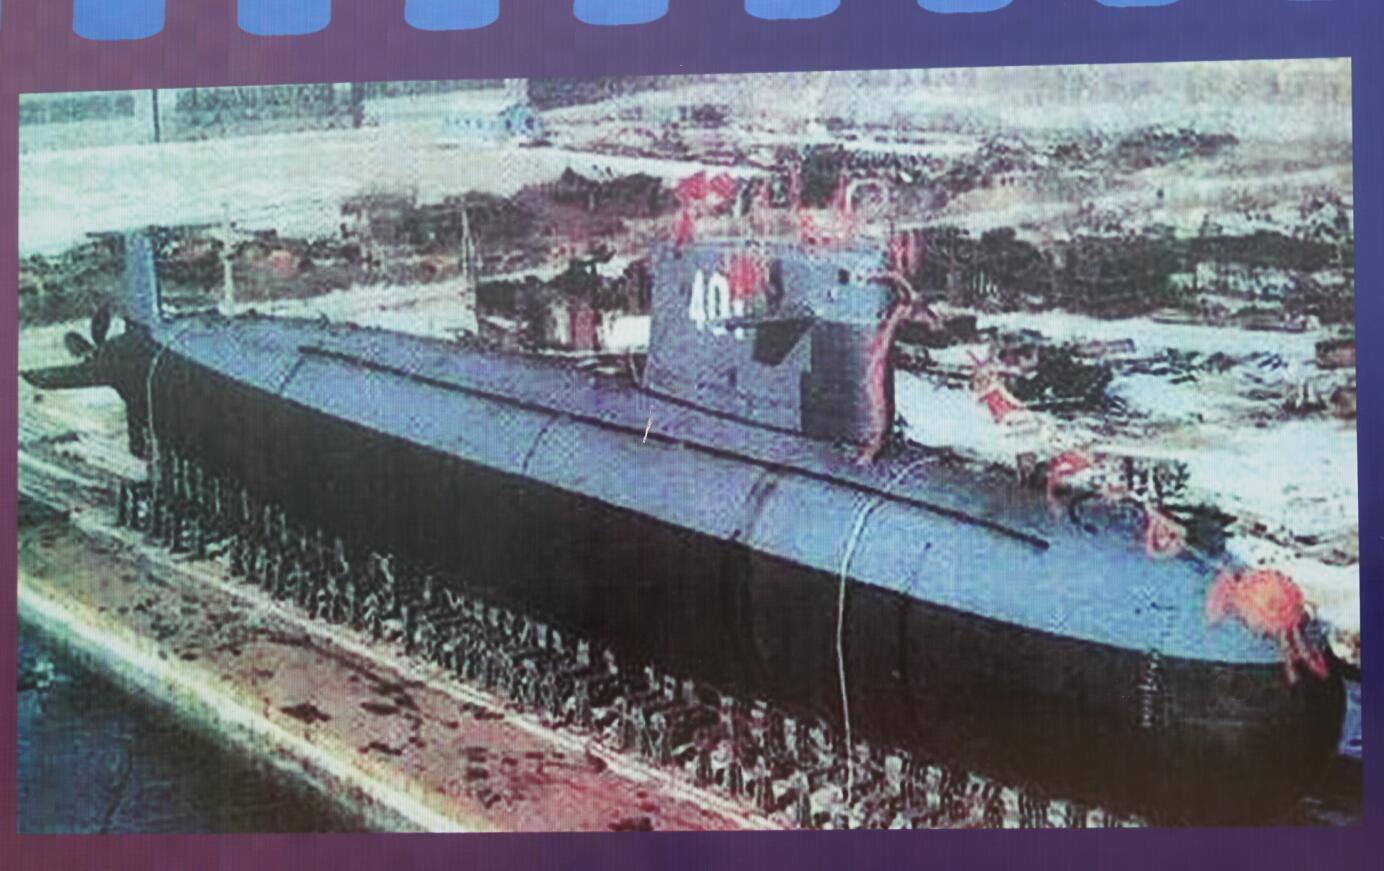 宋楠:宋dm与解放军091级401号攻击型核潜艇的游记